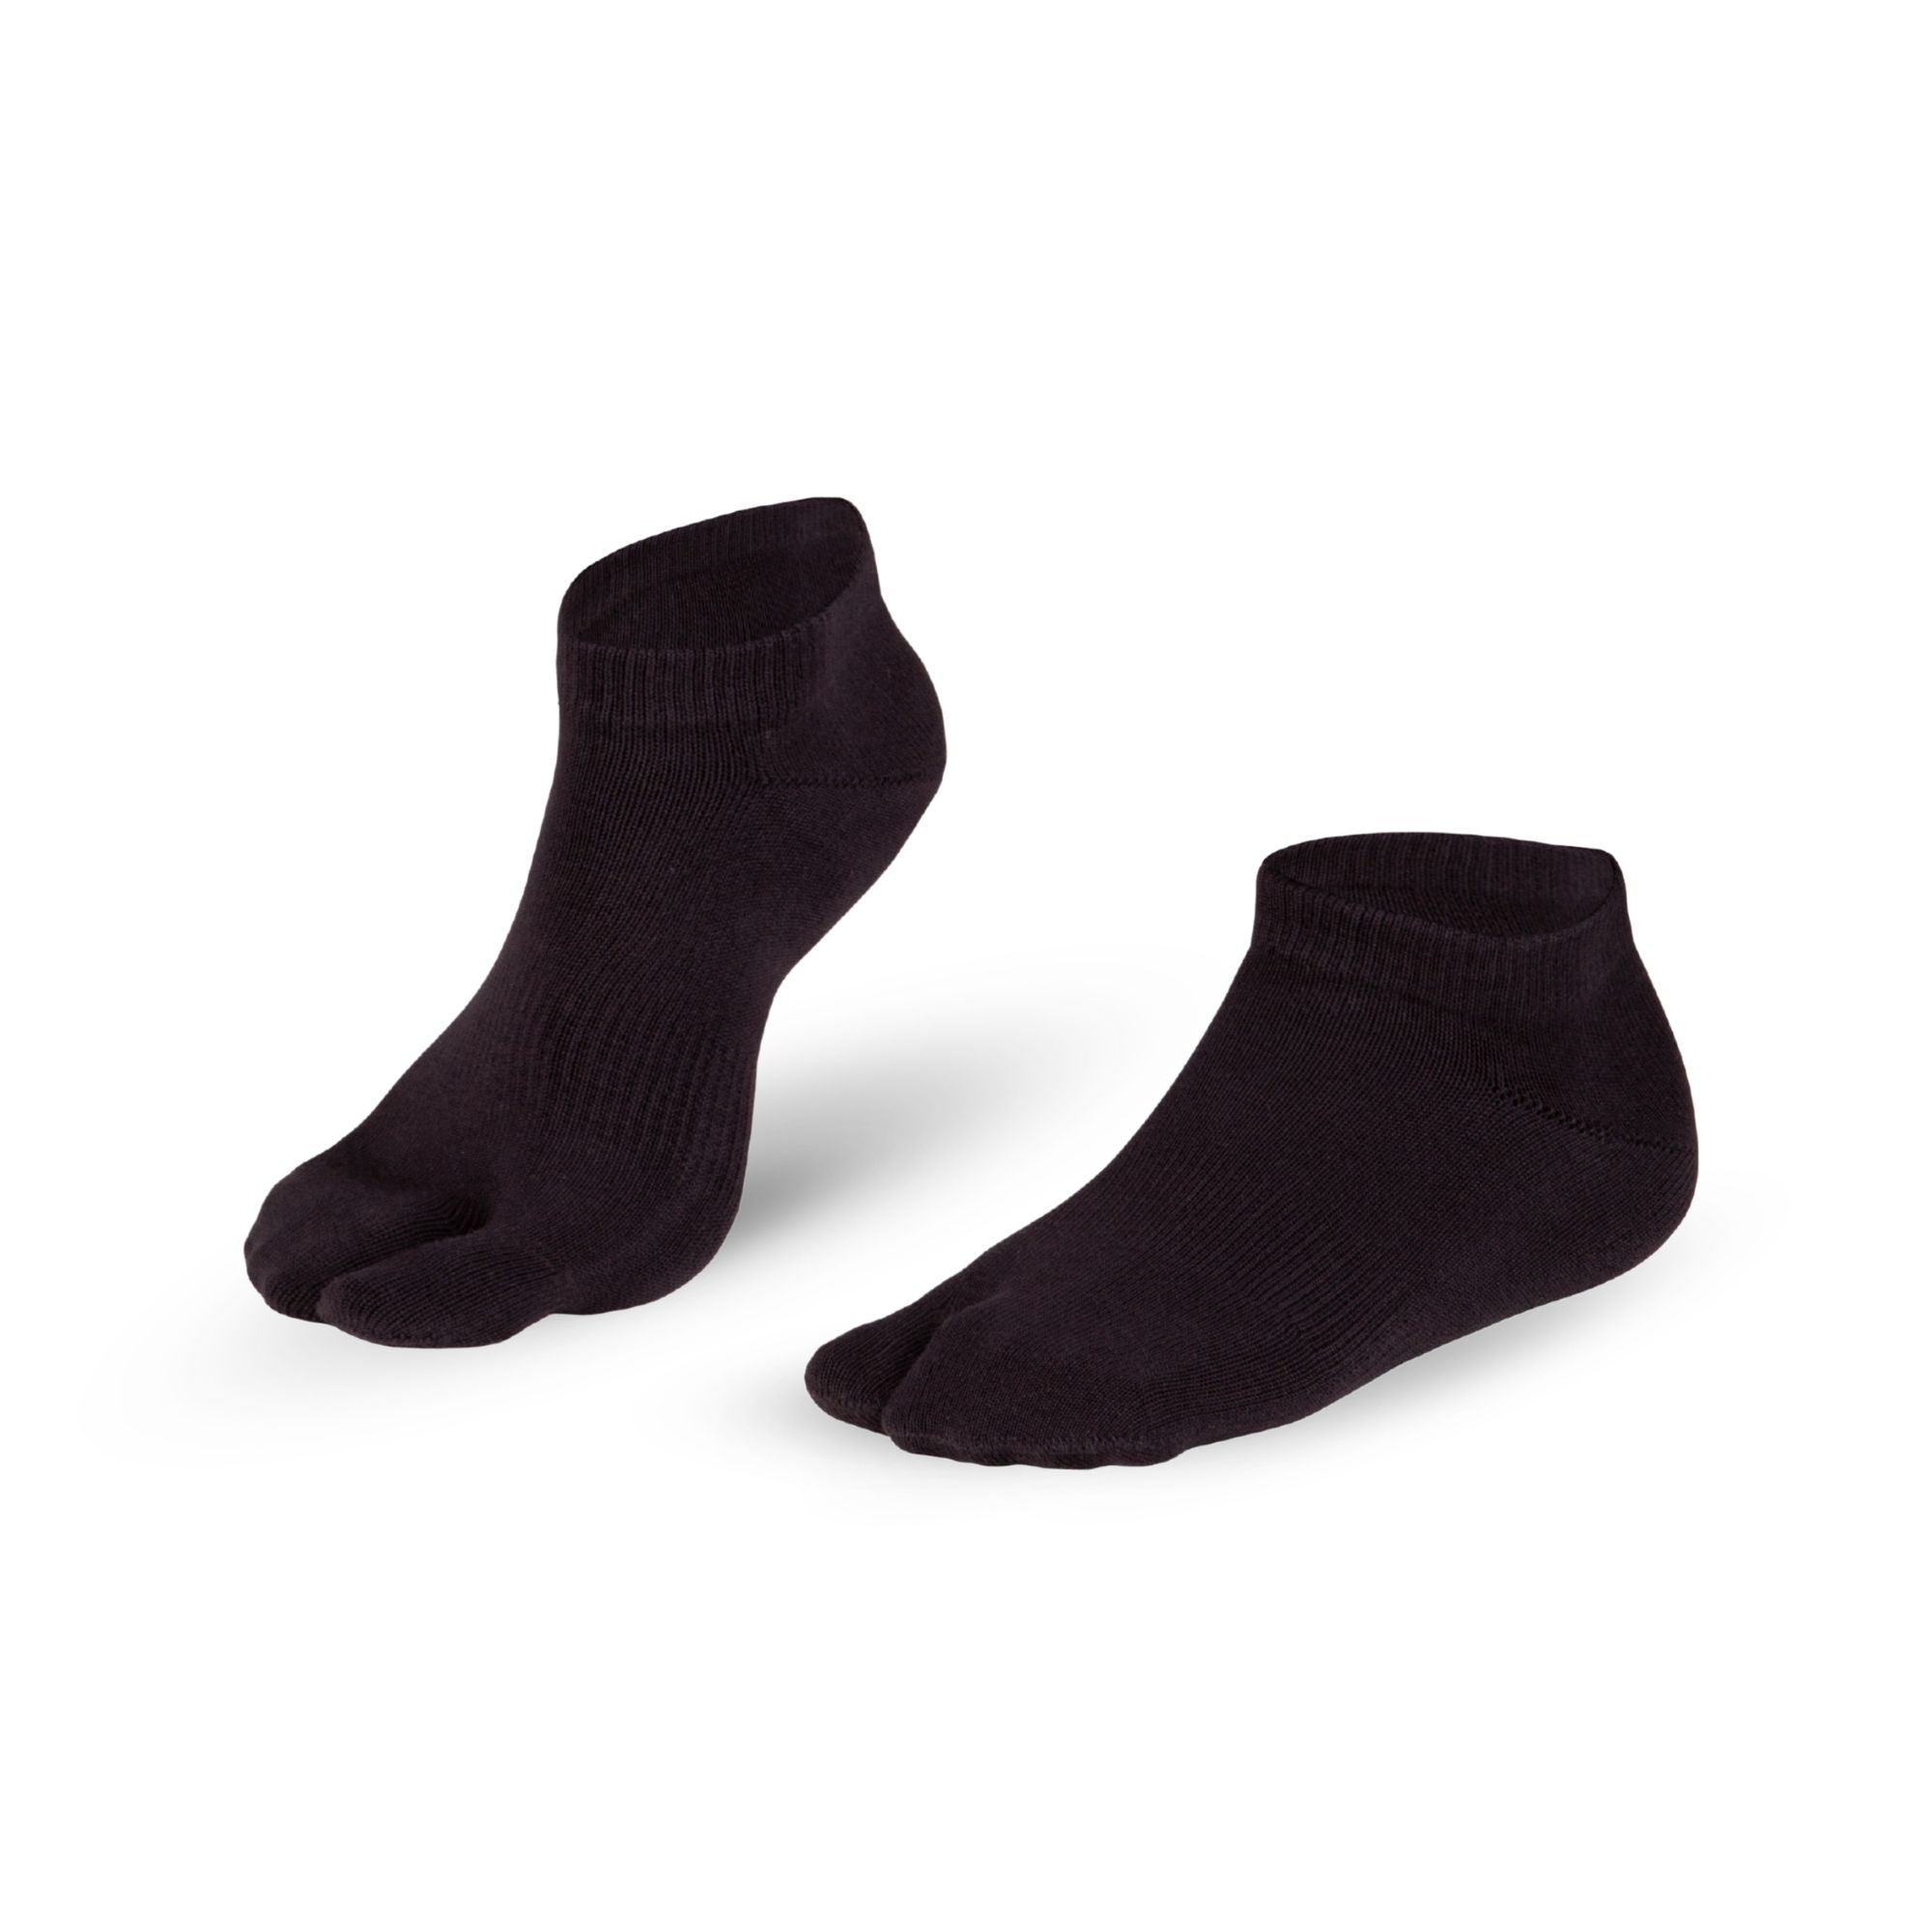 Knitido Tabi Socks Sneaker, chaussettes courtes en coton avec un seul gros orteil gris foncé